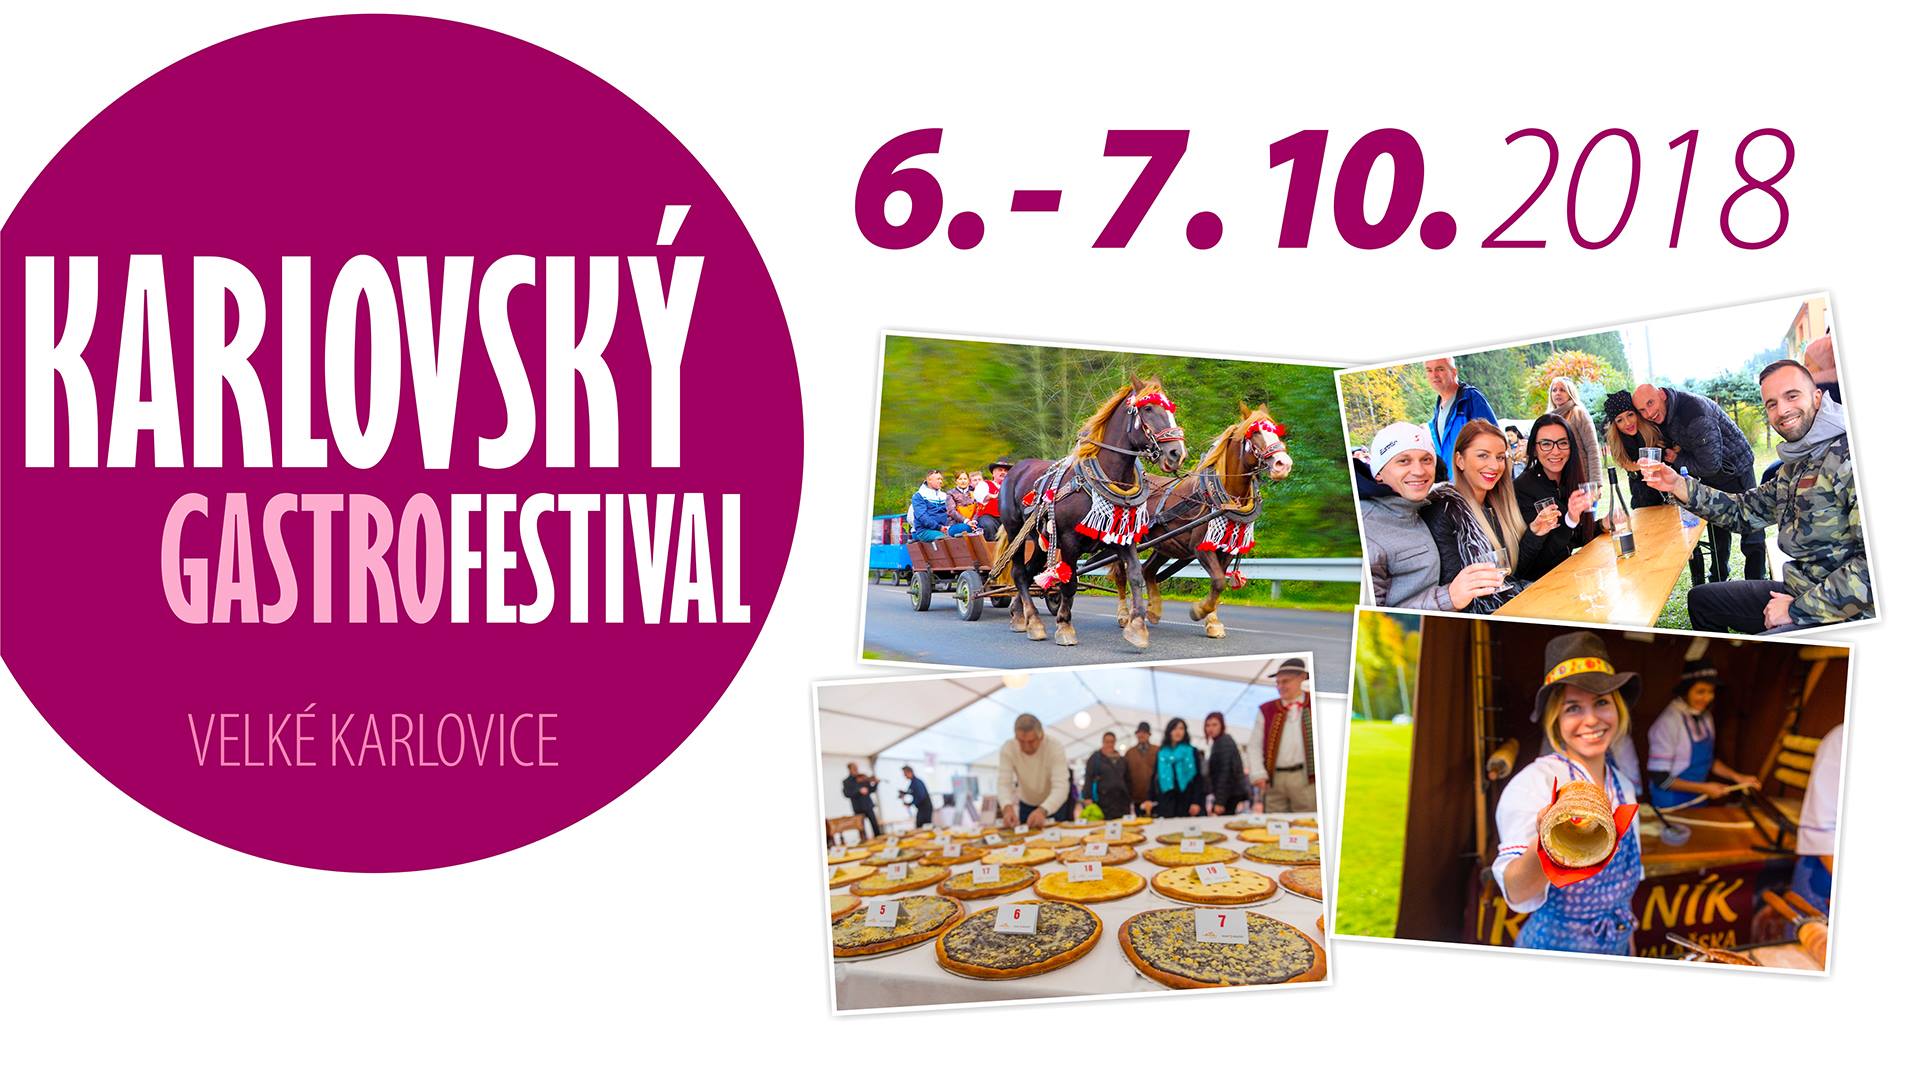 Karlovsk gastrofestival 2018 Velk Karlovice - 10.ronk